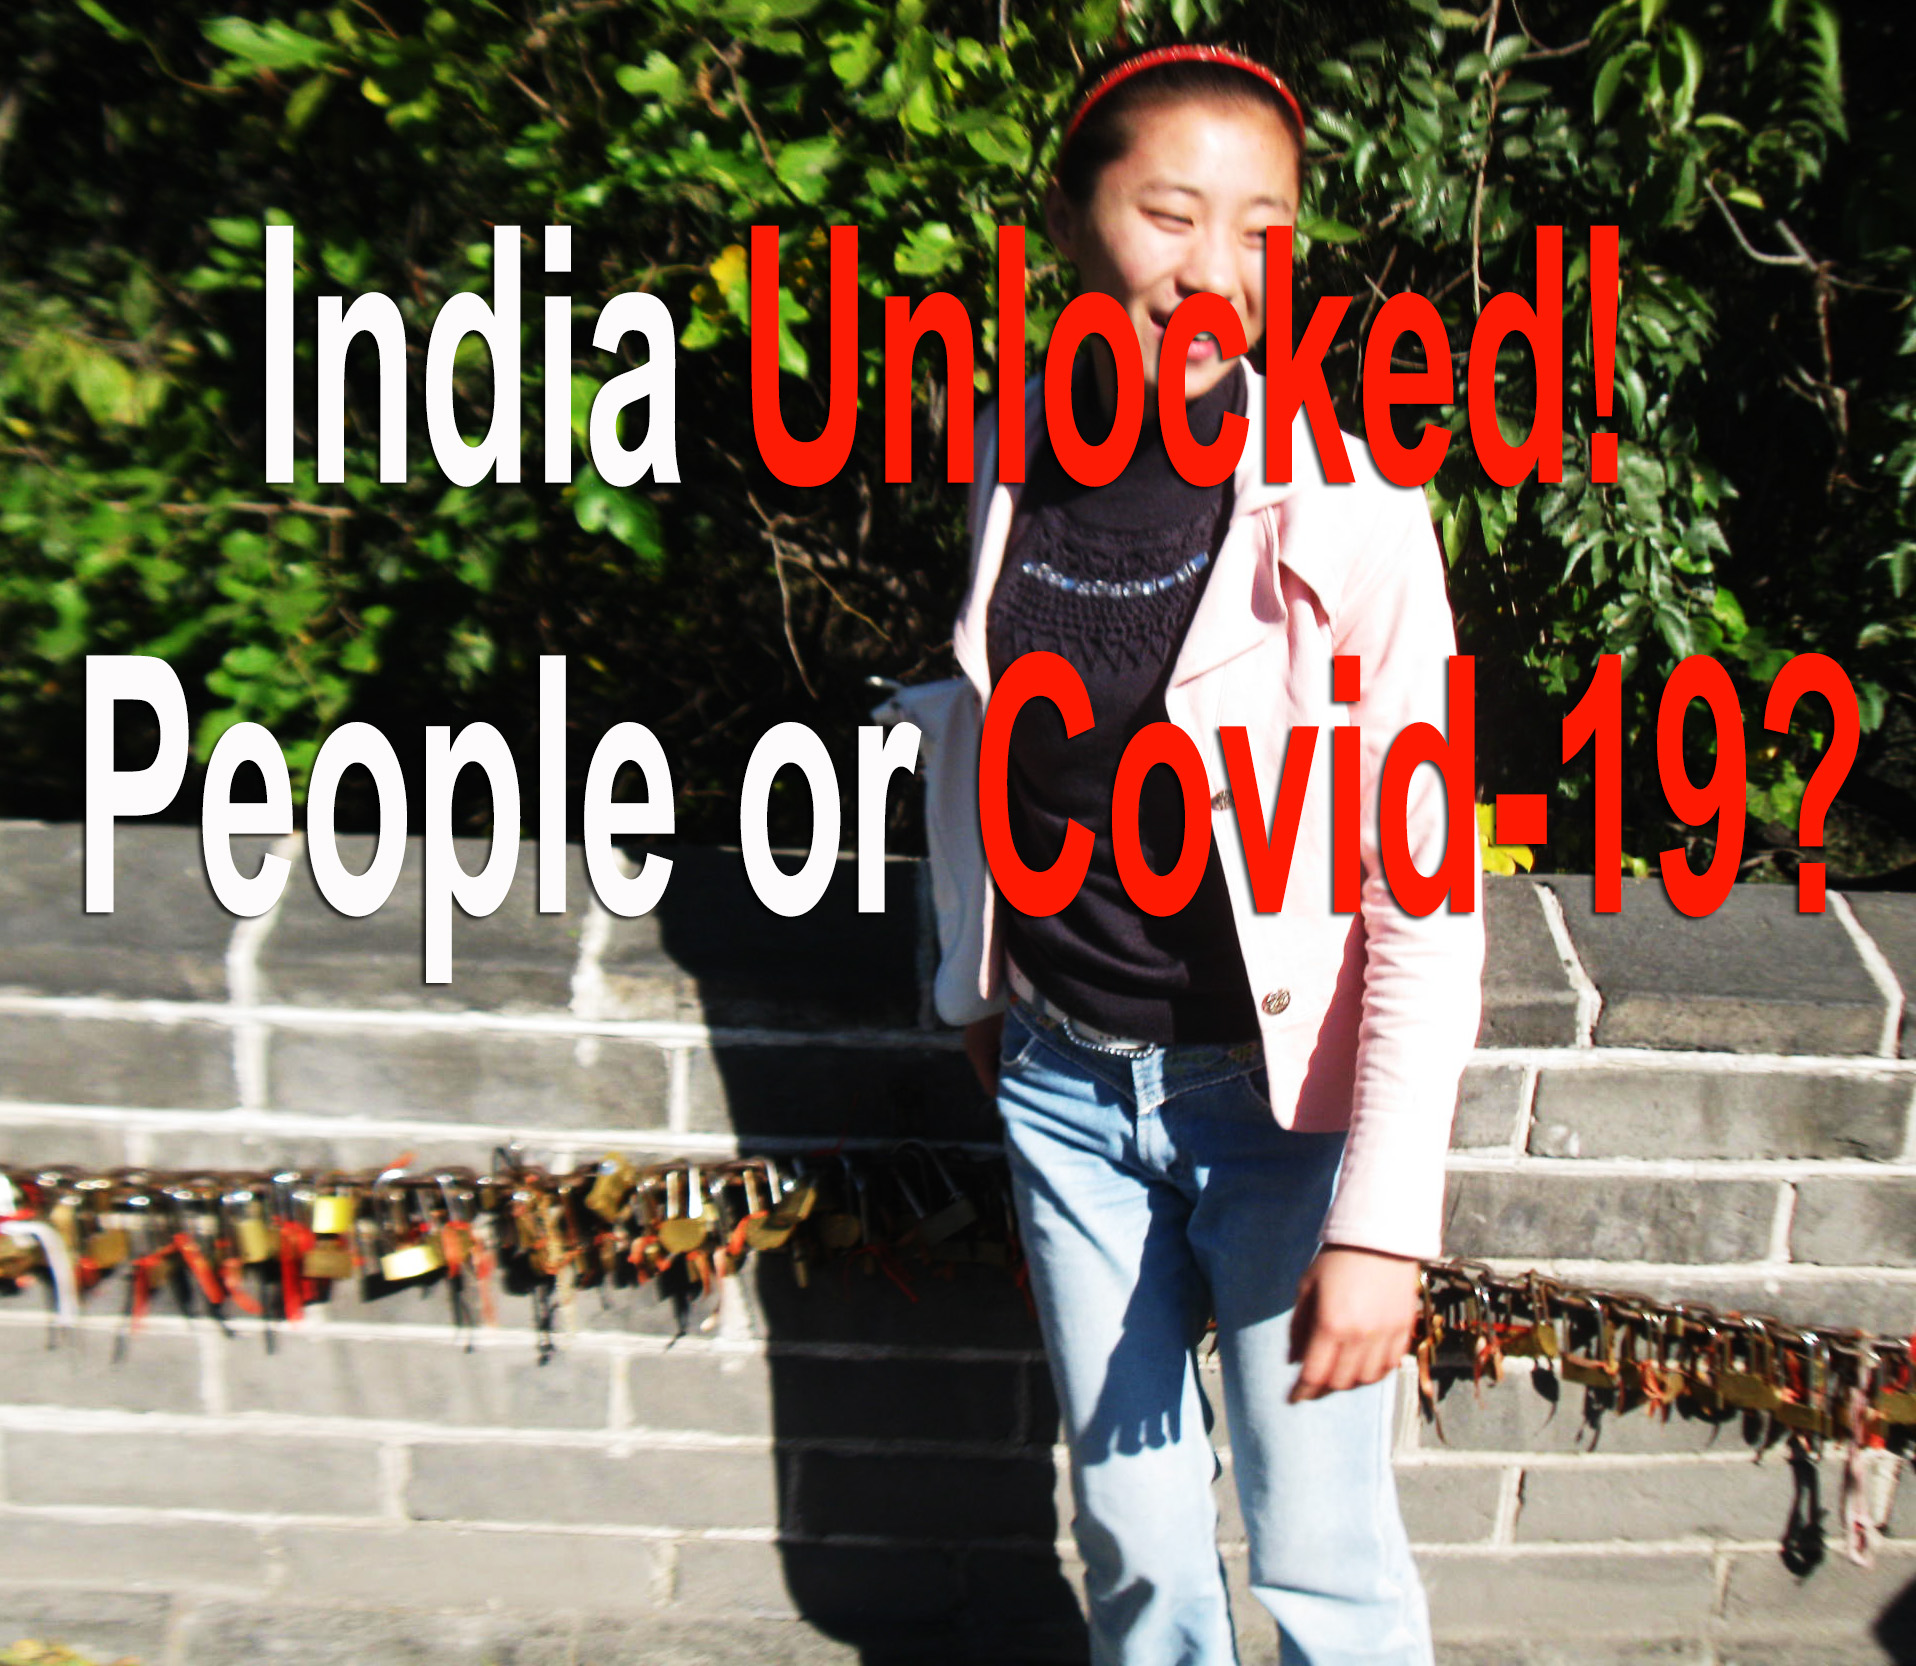 India Unlocked! People or Covid-19?